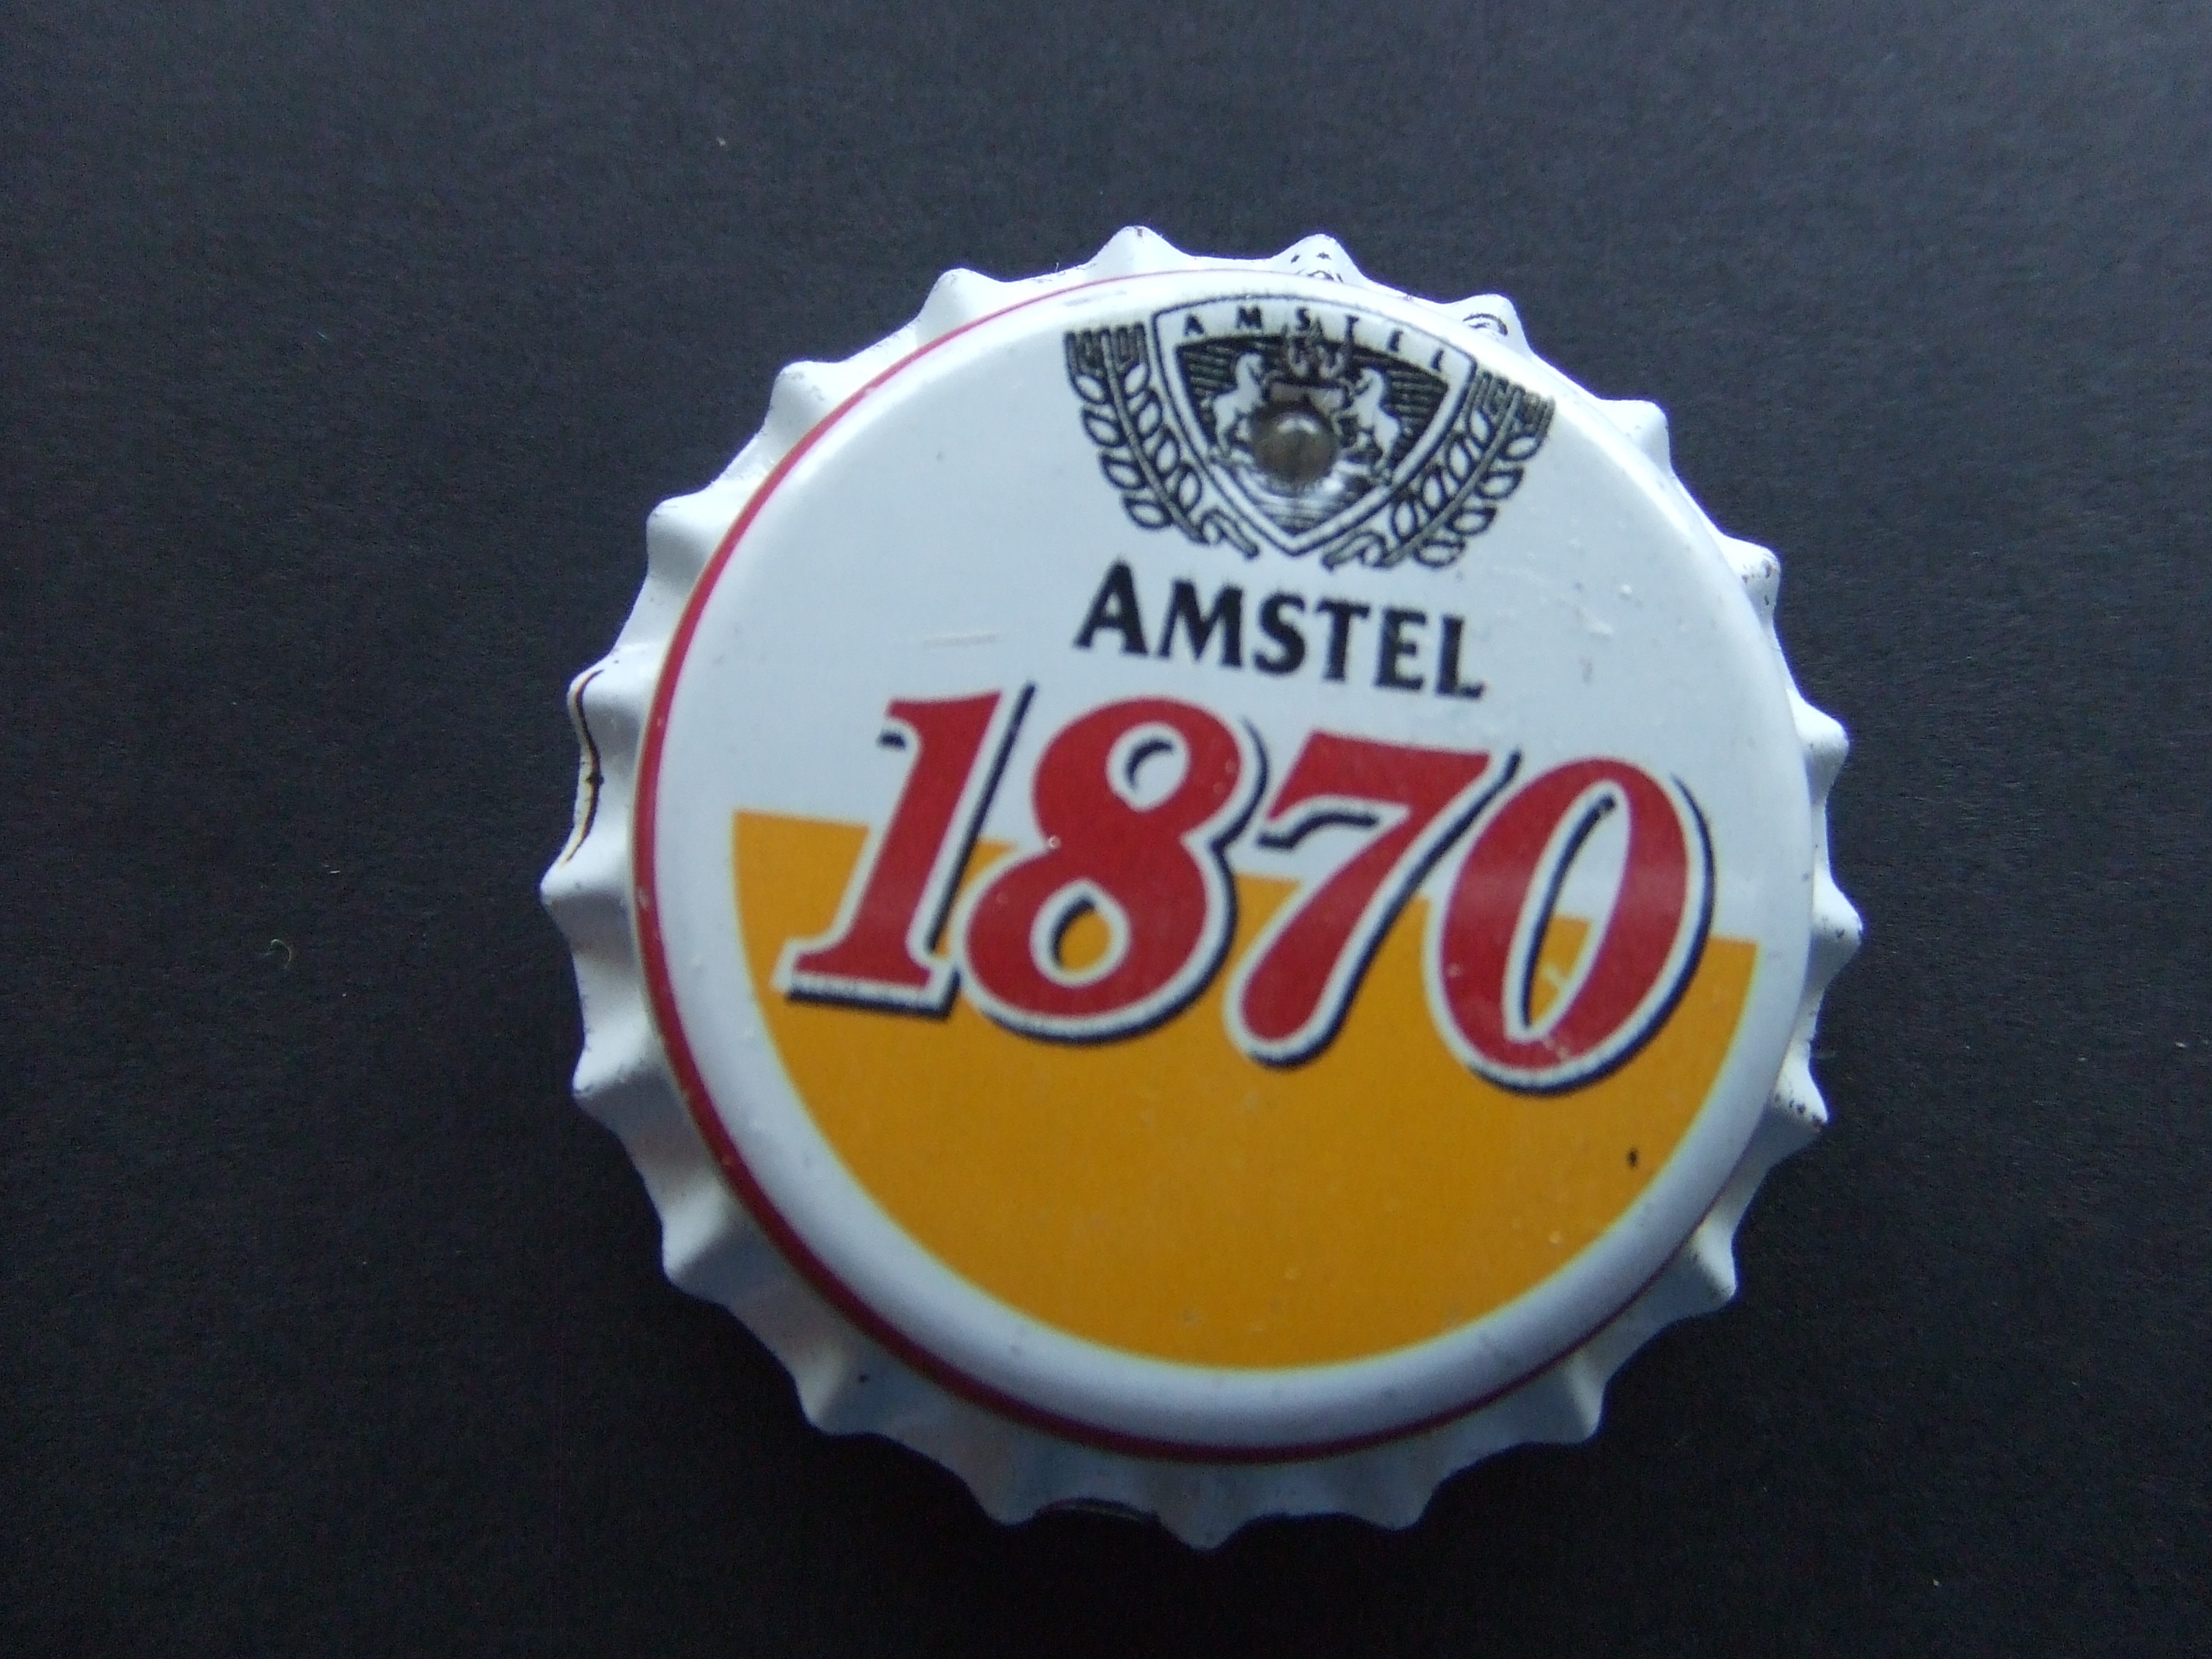 Amstel 1870 bier kroonkurk speldje button